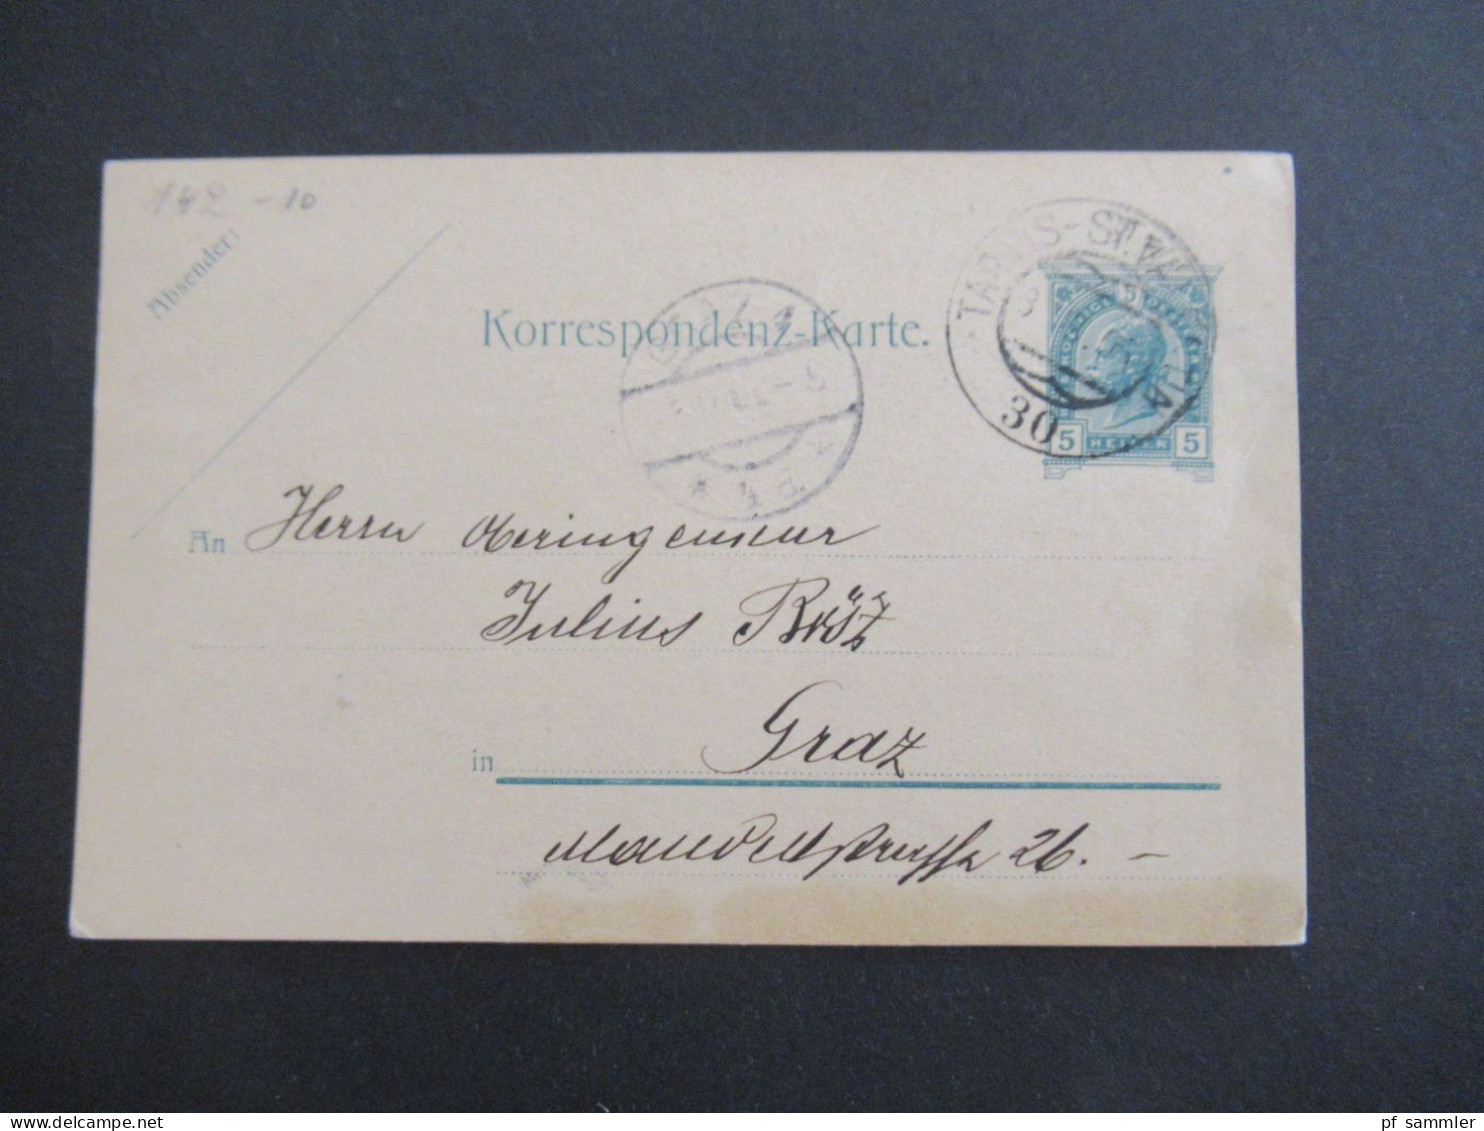 Österreich 1900 GA 5 Heller Stempel Tarvis St. Valentin Nach Graz Mit Ank. Stempel - Postcards